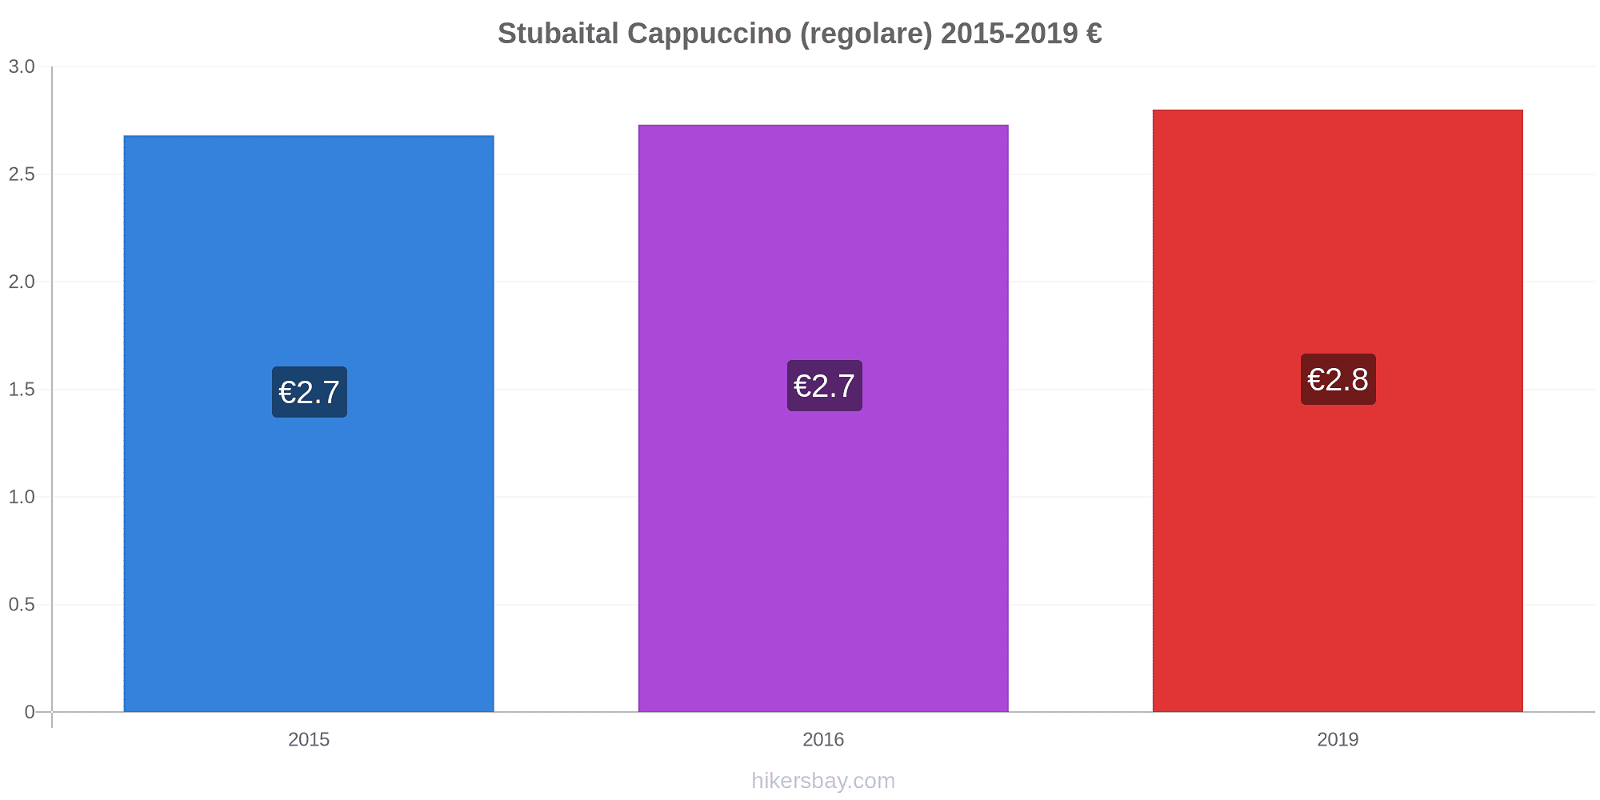 Stubaital variazioni di prezzo Cappuccino (normale) hikersbay.com